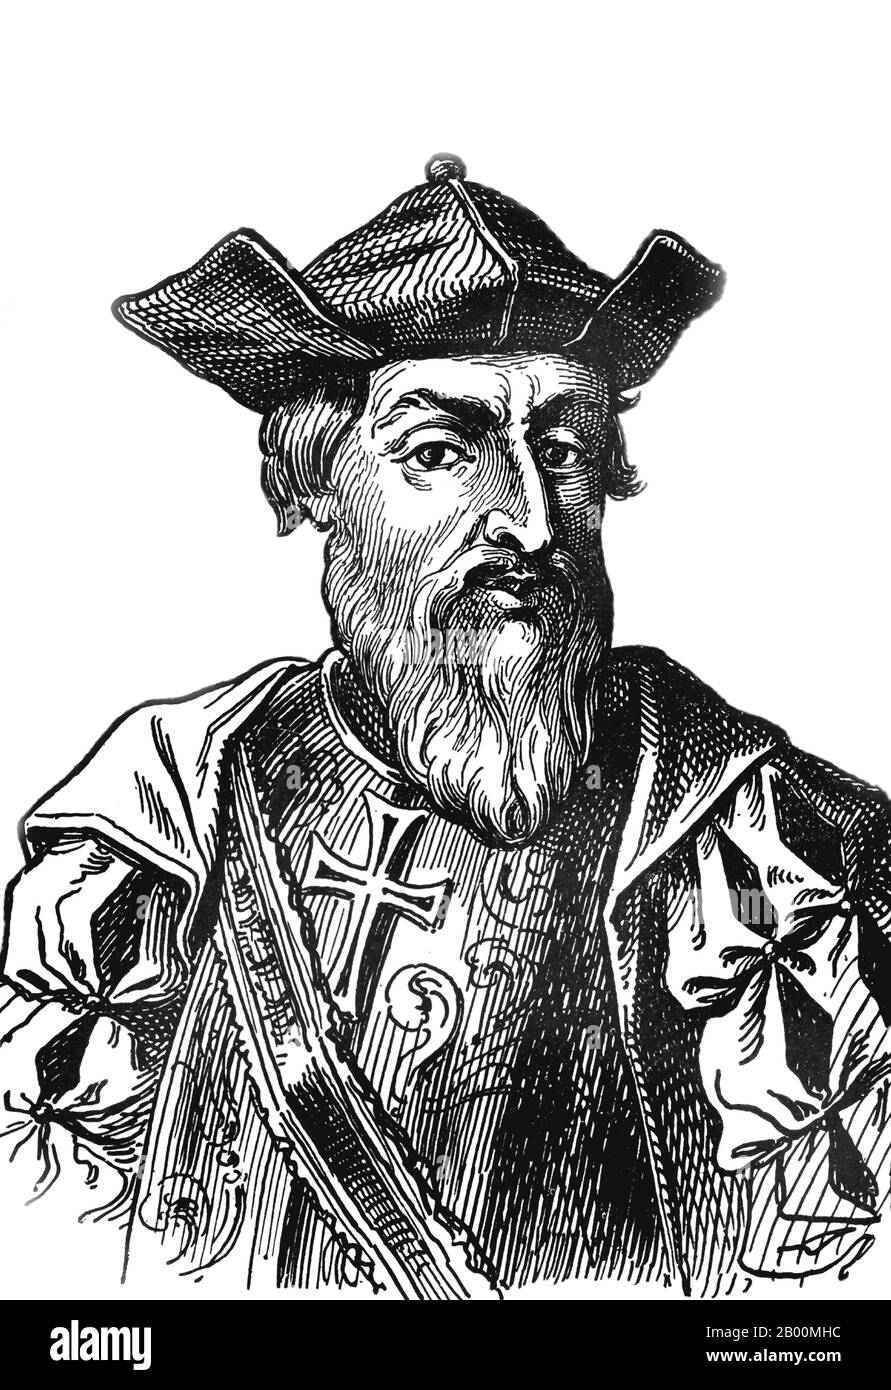 Vasco da Gama (1460 ou 1469 – 1524) Explorateur et impérialiste, c. 1913. Vasco da Gama, 1er comte de Vidigueira (1460 ou 1469 – 1524) était un explorateur portugais, l'un des plus réussis dans l'âge européen de la découverte et le commandant des premiers navires à naviguer directement de l'Europe à l'Inde. Pendant une courte période en 1524, il a été gouverneur de l'Inde portugaise sous le titre de Viceroy. Banque D'Images